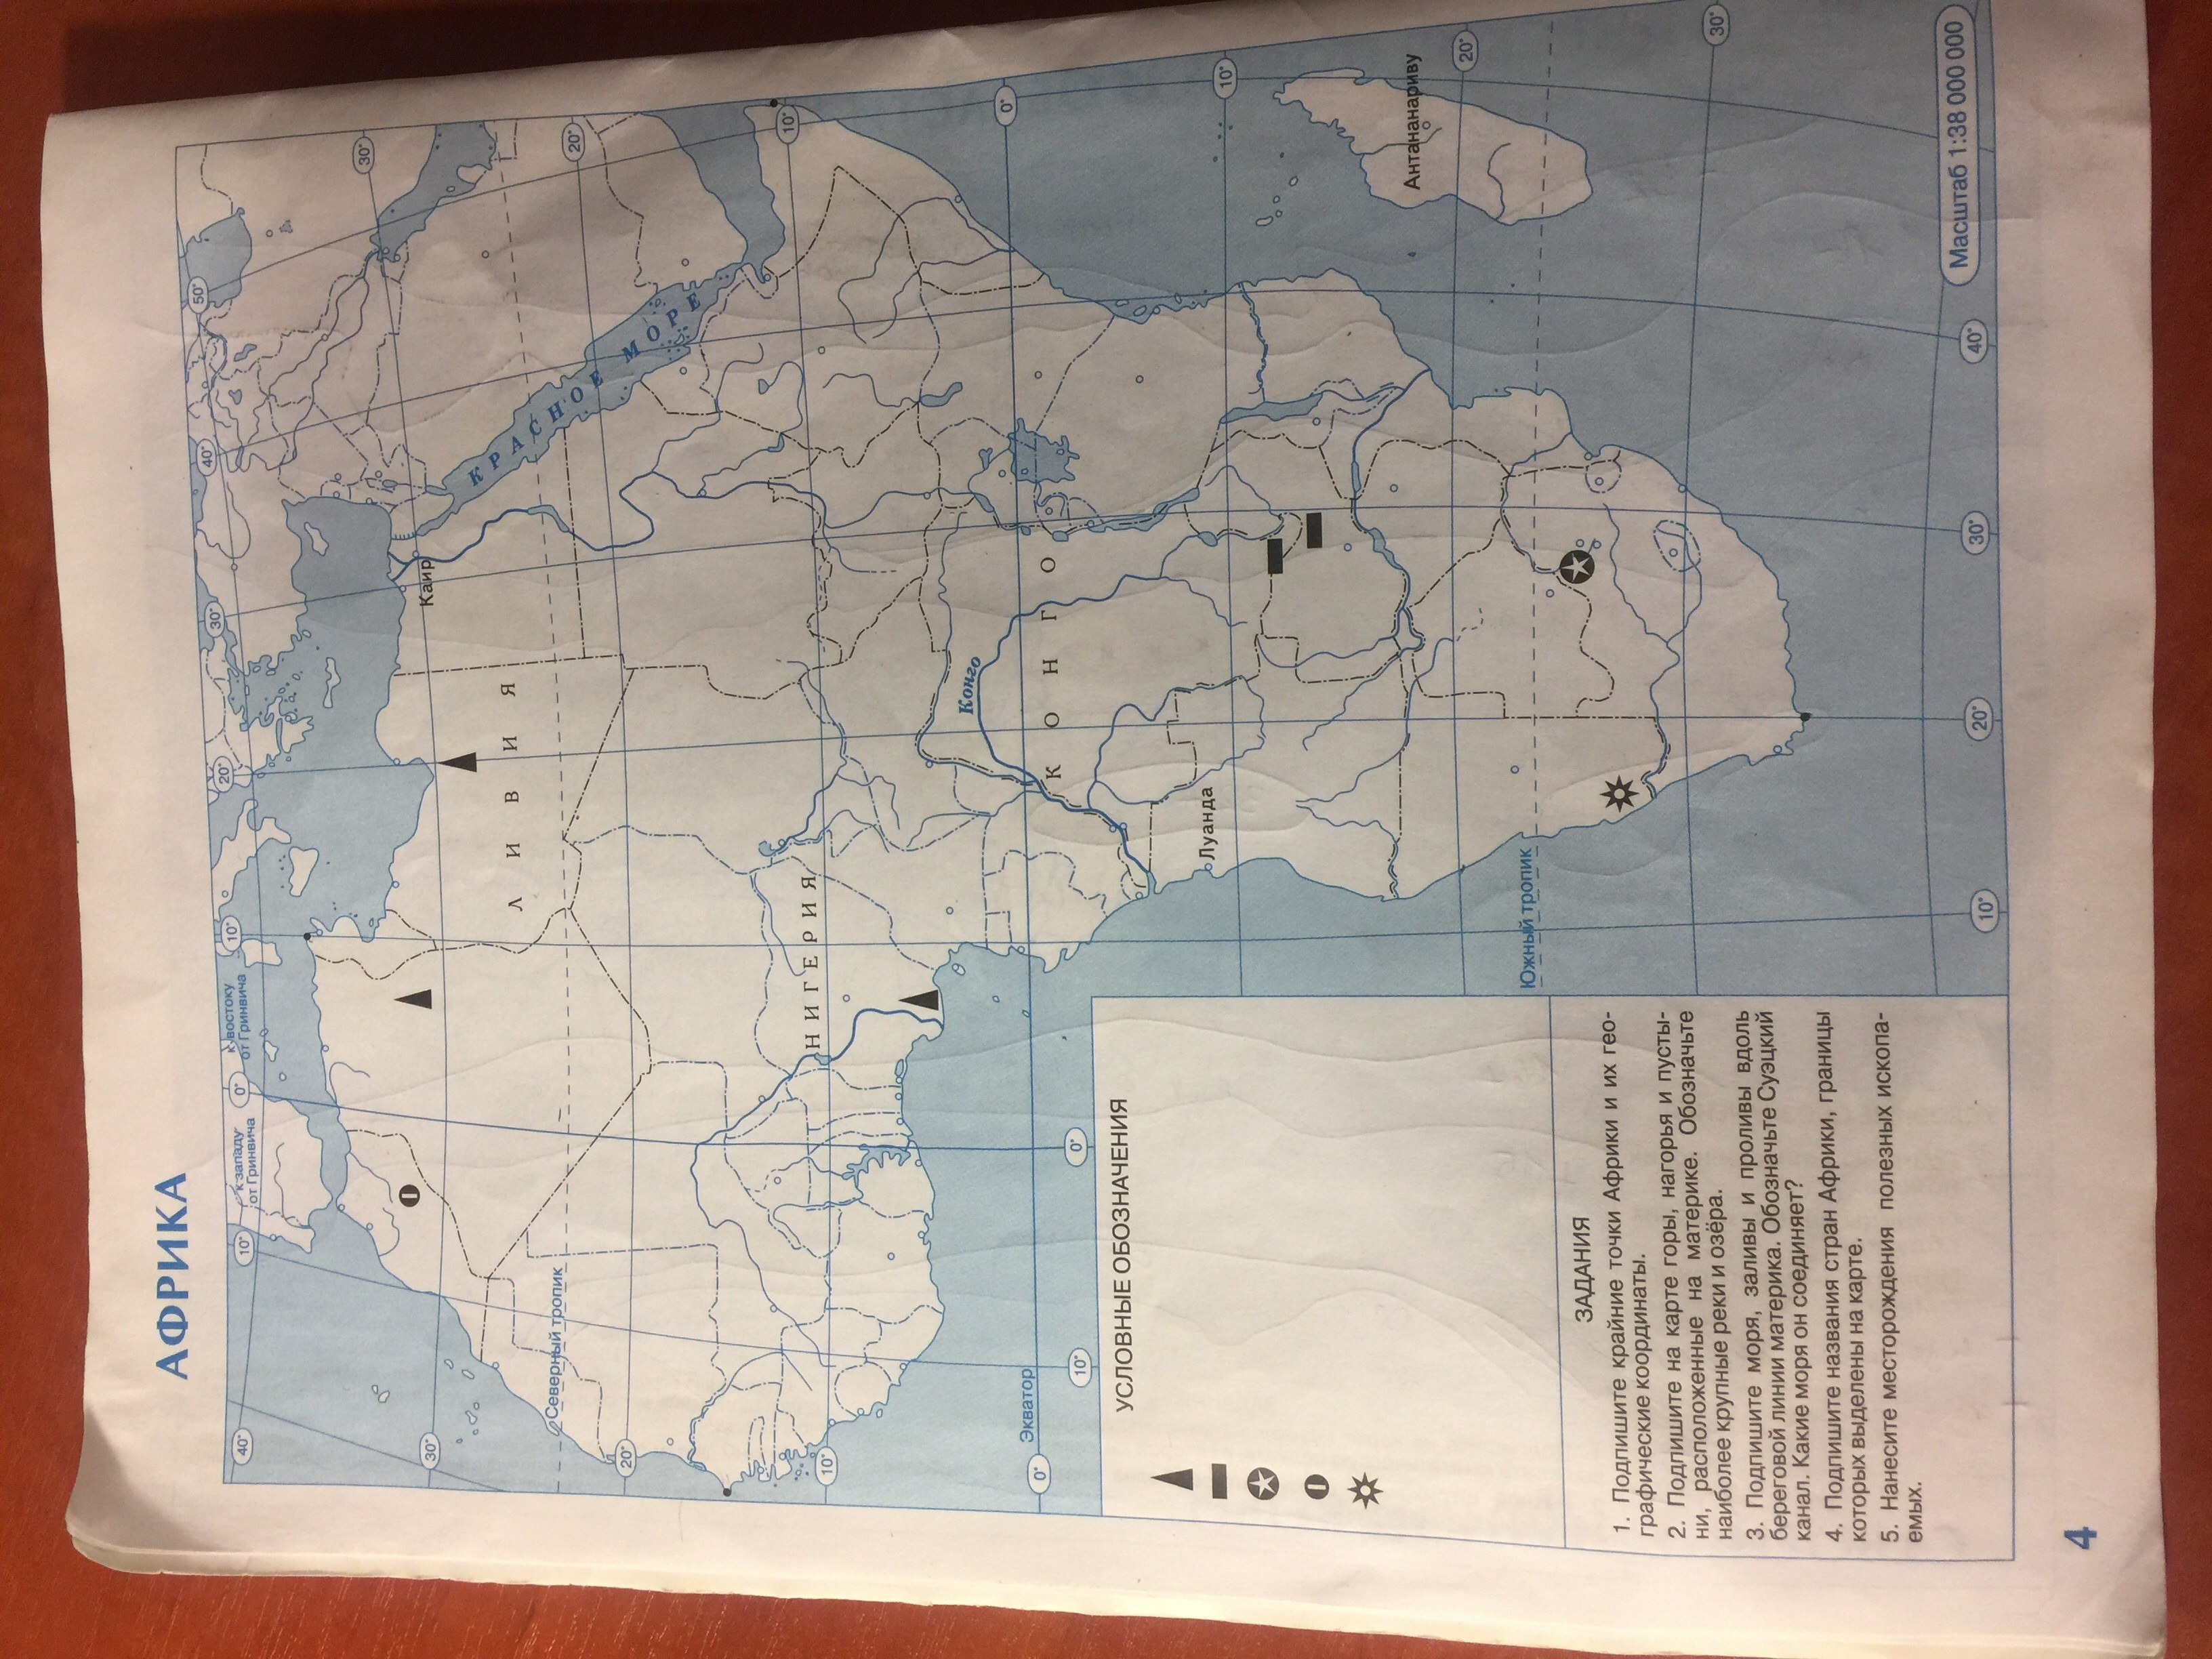 Горы атлас на контурной карте 7 класс. Крайние точки Африки на контурной карте 7 класс. Подпишите на карте крайние точки Африки. Крайние точки Африки на карте. Подпишите на карте крайние точки Африки и географические координаты.